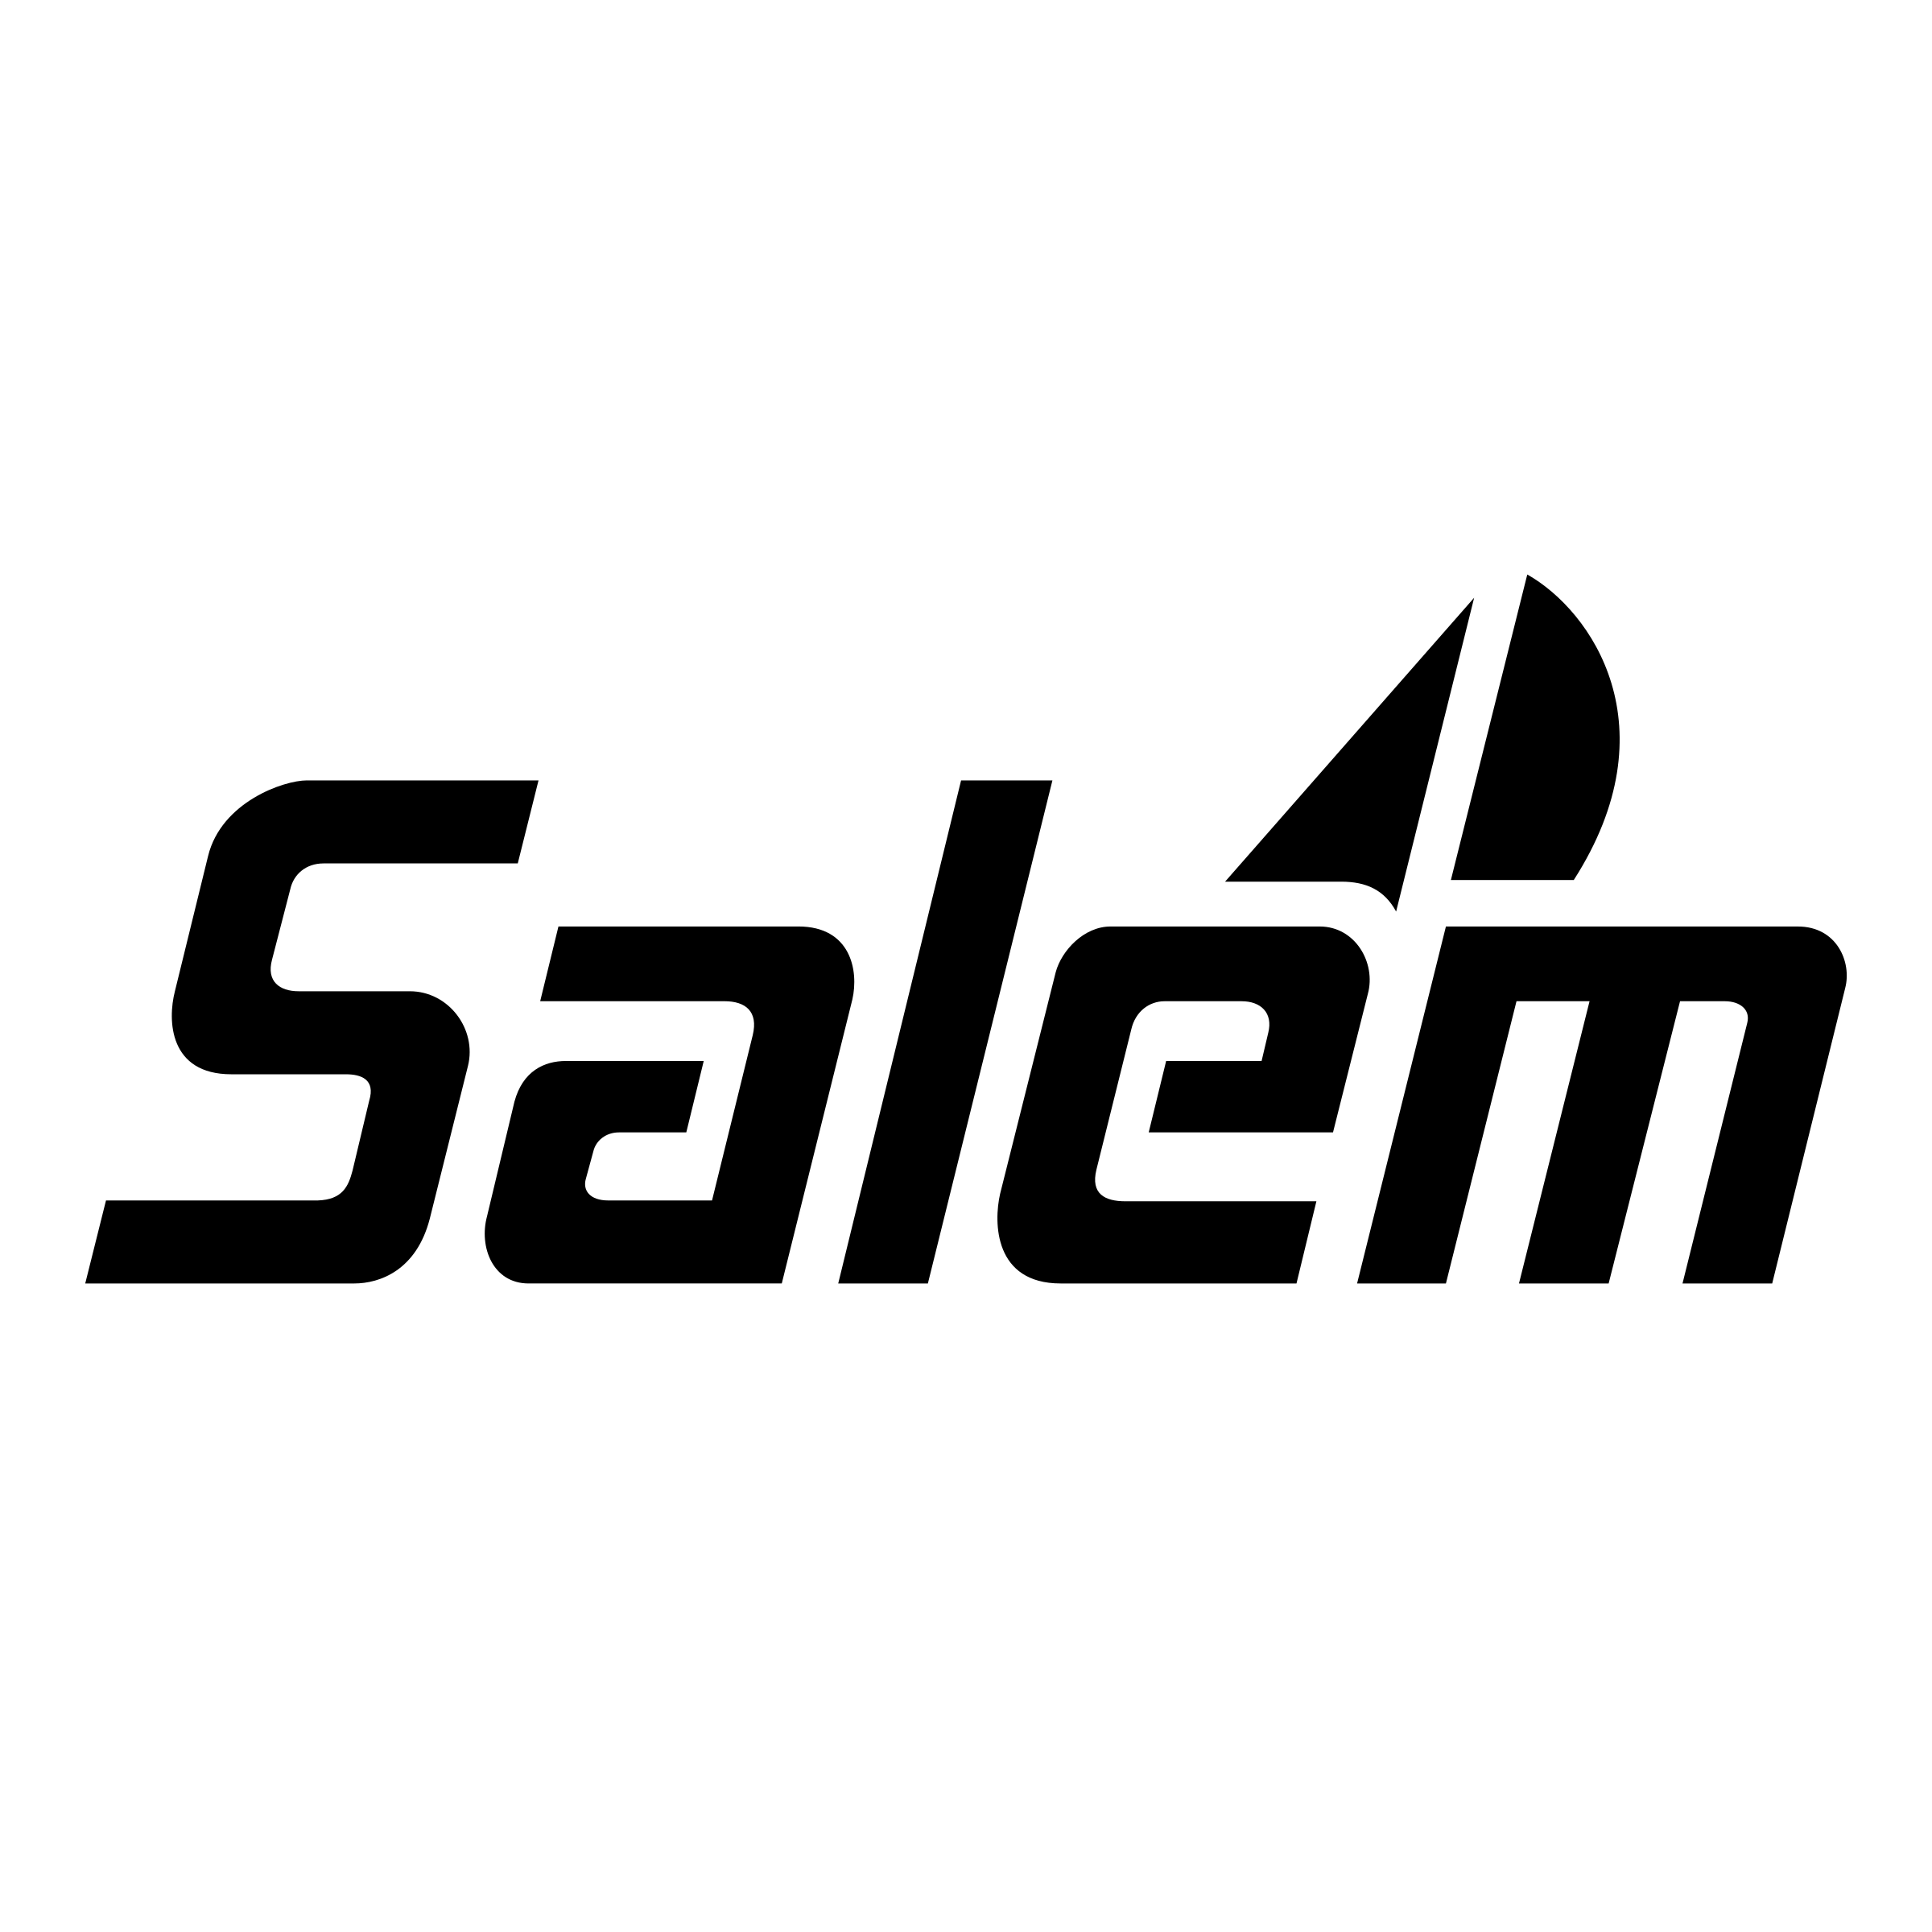 Salem Logo - Salem Logo PNG Transparent & SVG Vector - Freebie Supply